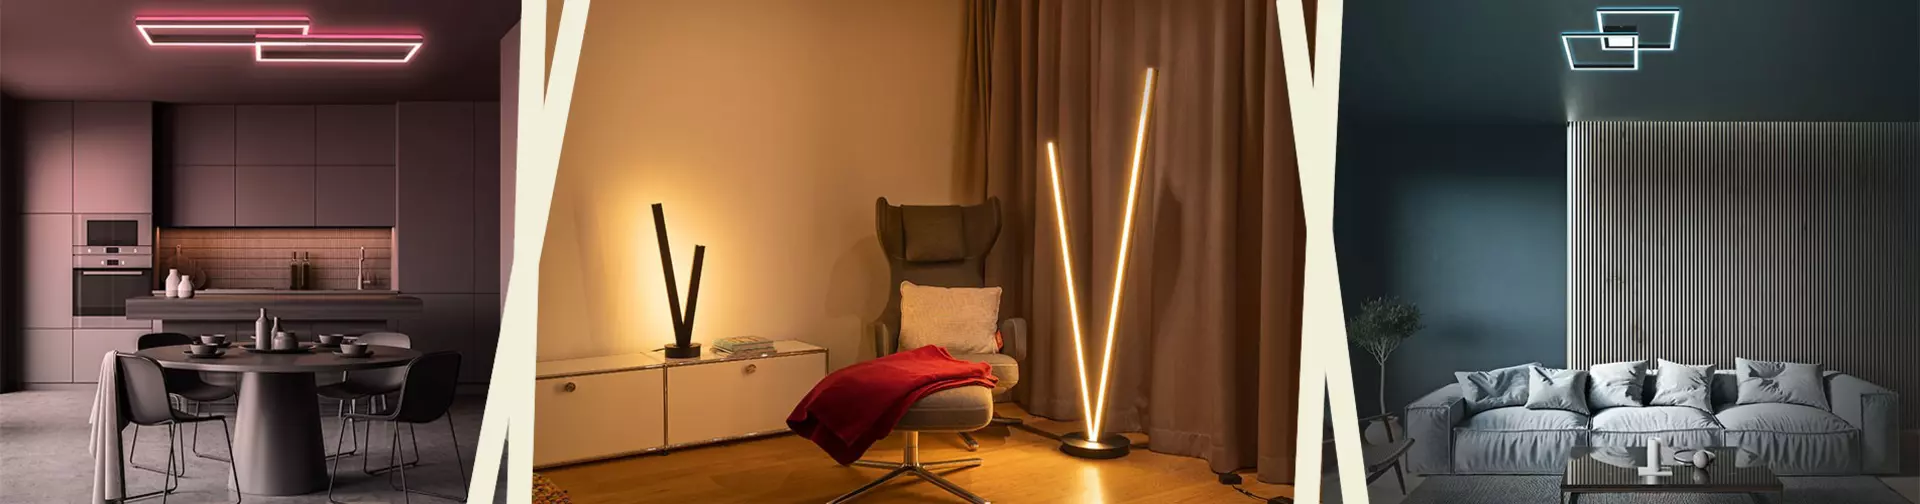 Smart Home Lights - intelligente Lichtlösung für Ihr modernes Zuhause